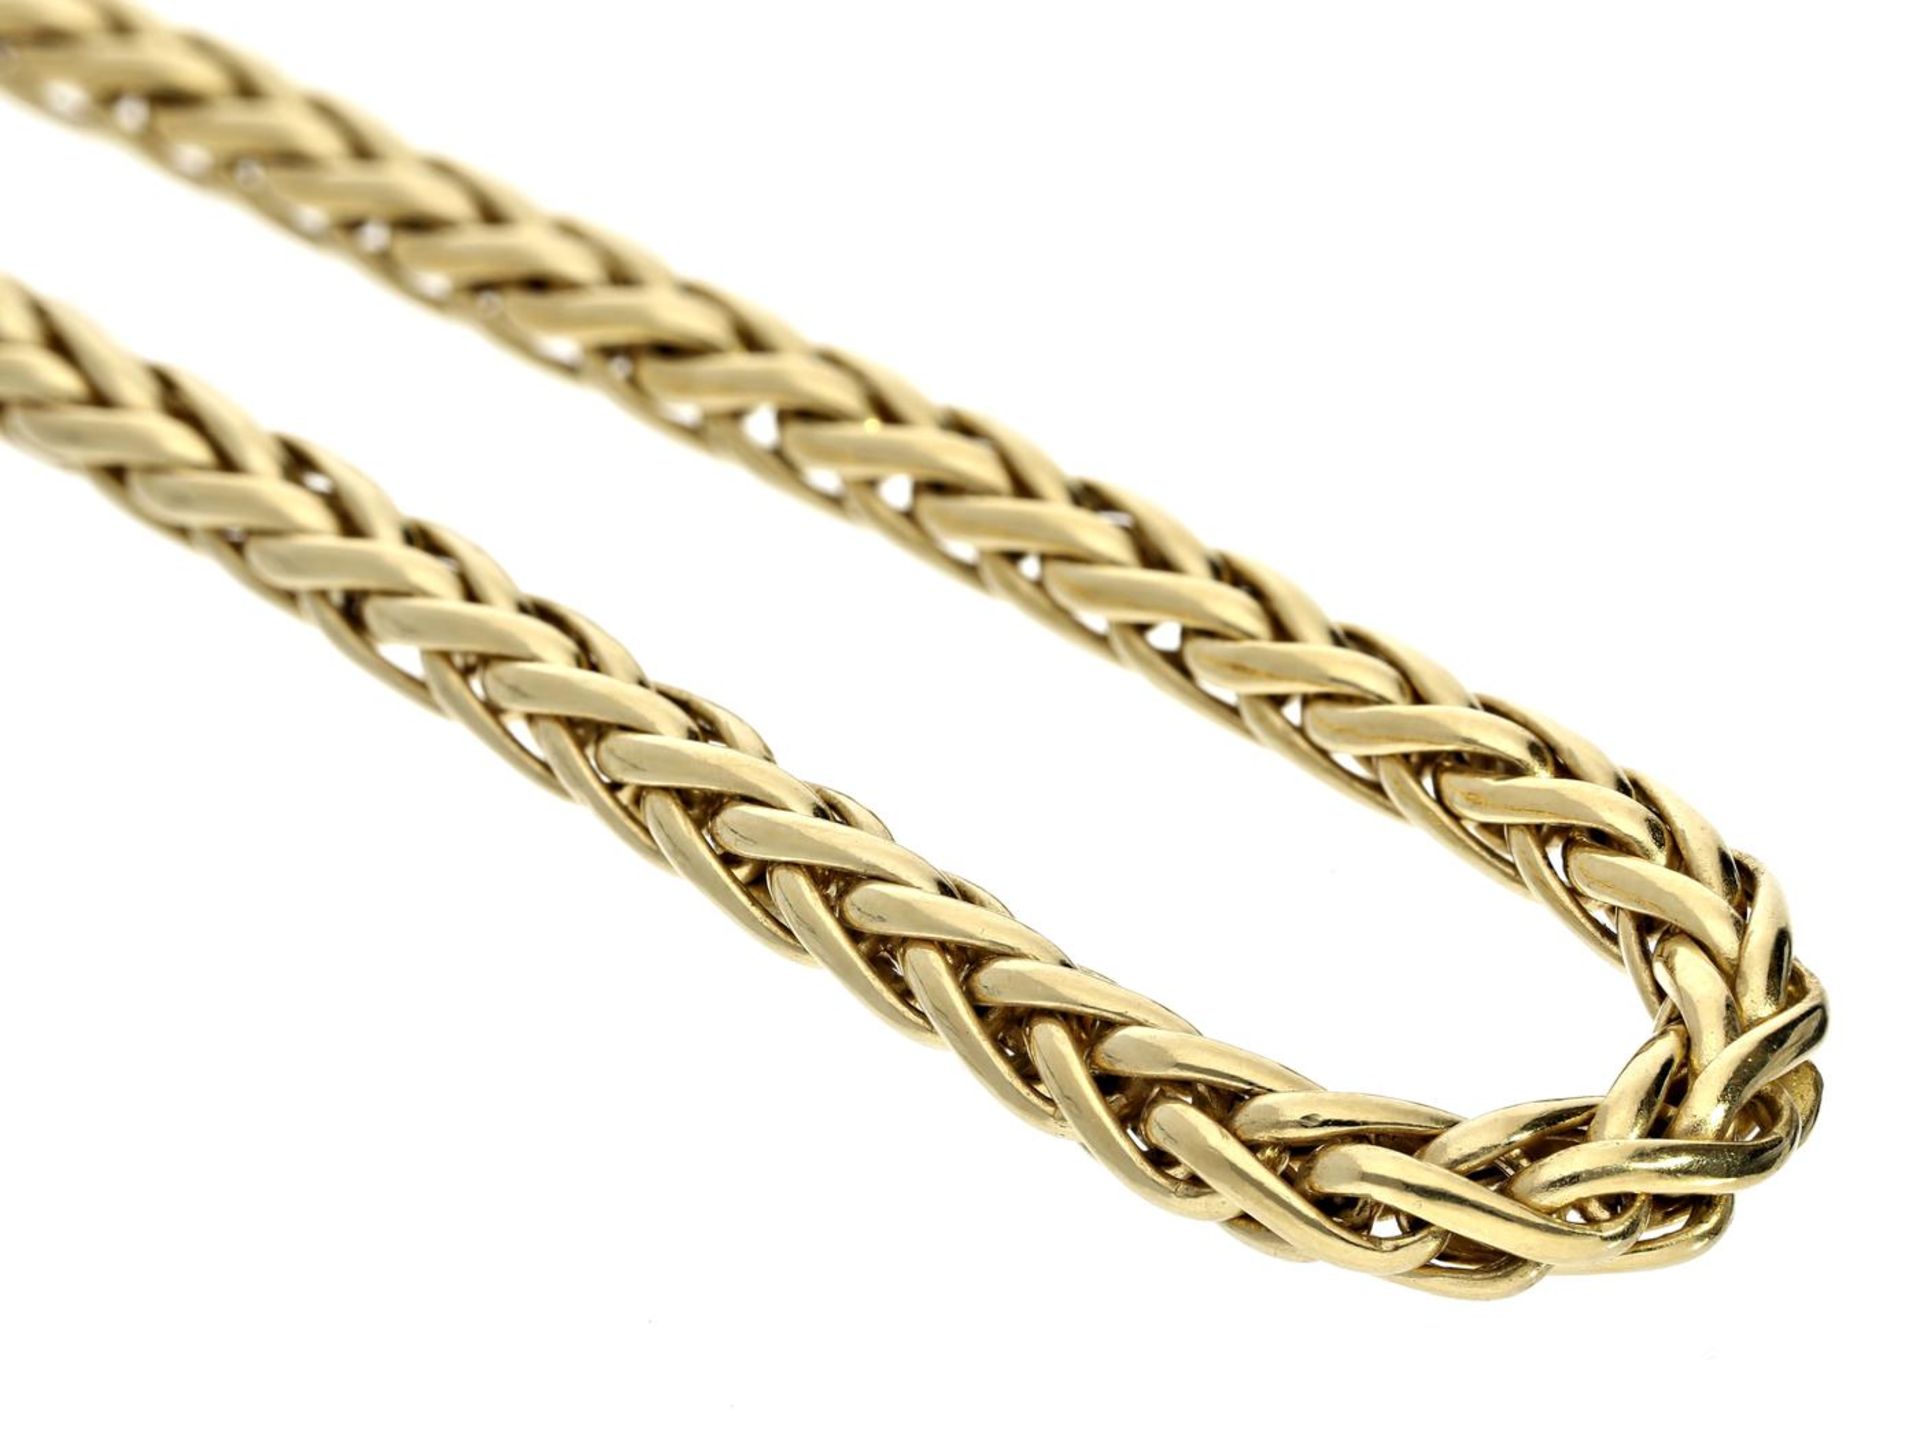 Kette: hochwertige 18K Goldkette mit dekorativem Zopfmuster und großem Federring Ca. 44,5cm lang,